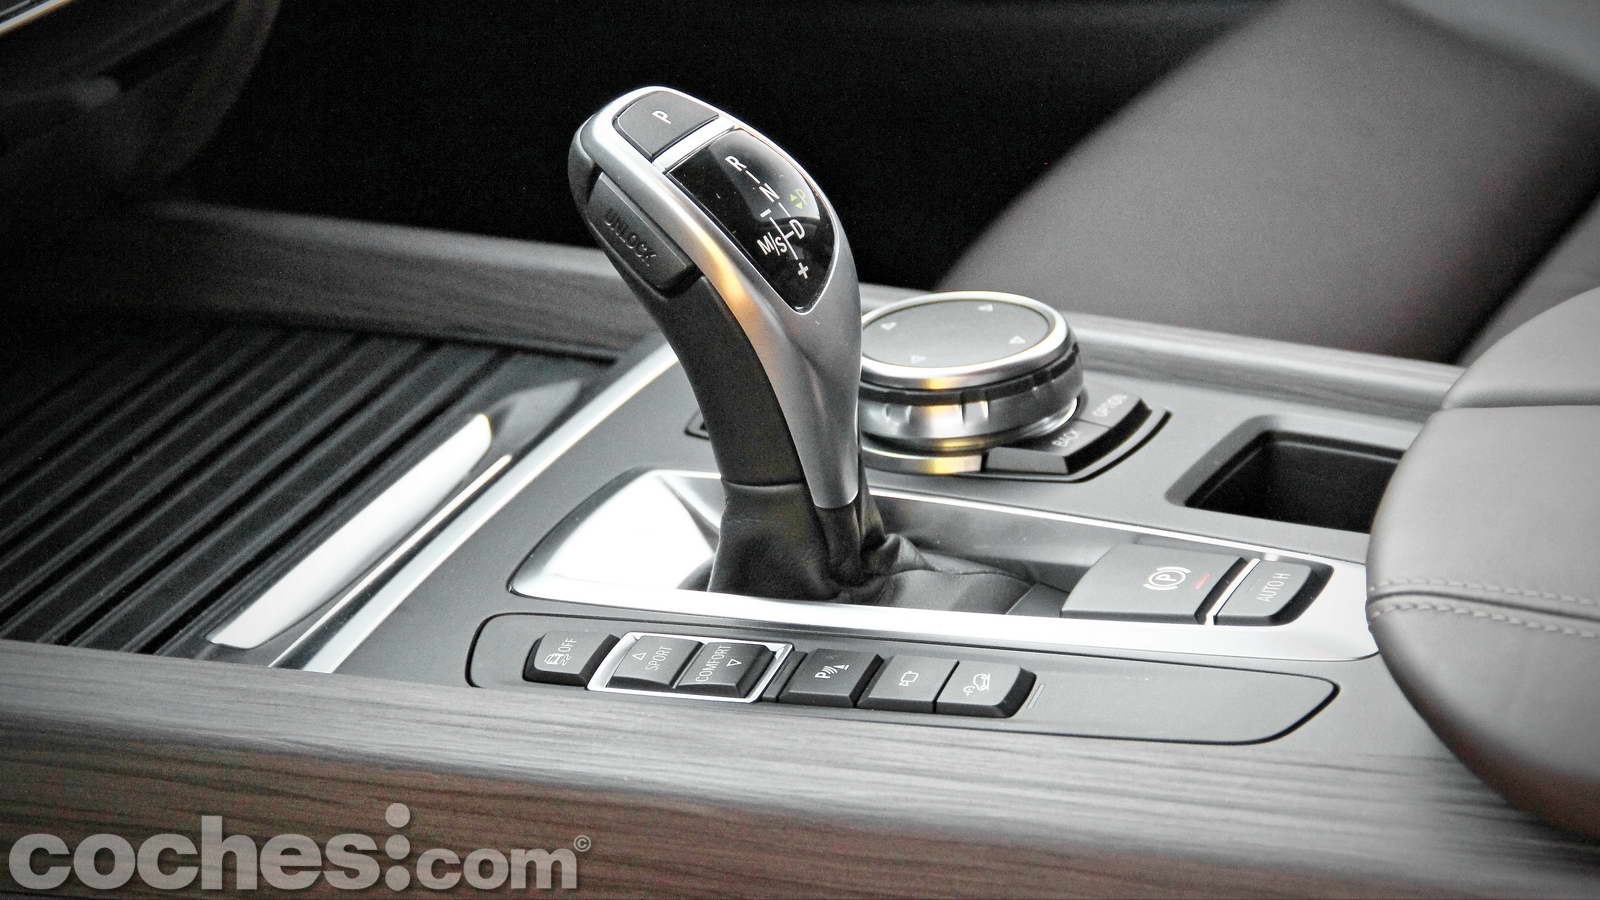 Volkswagen abandona los controles de pantalla táctil y recupera los botones  analógicos para sus coches